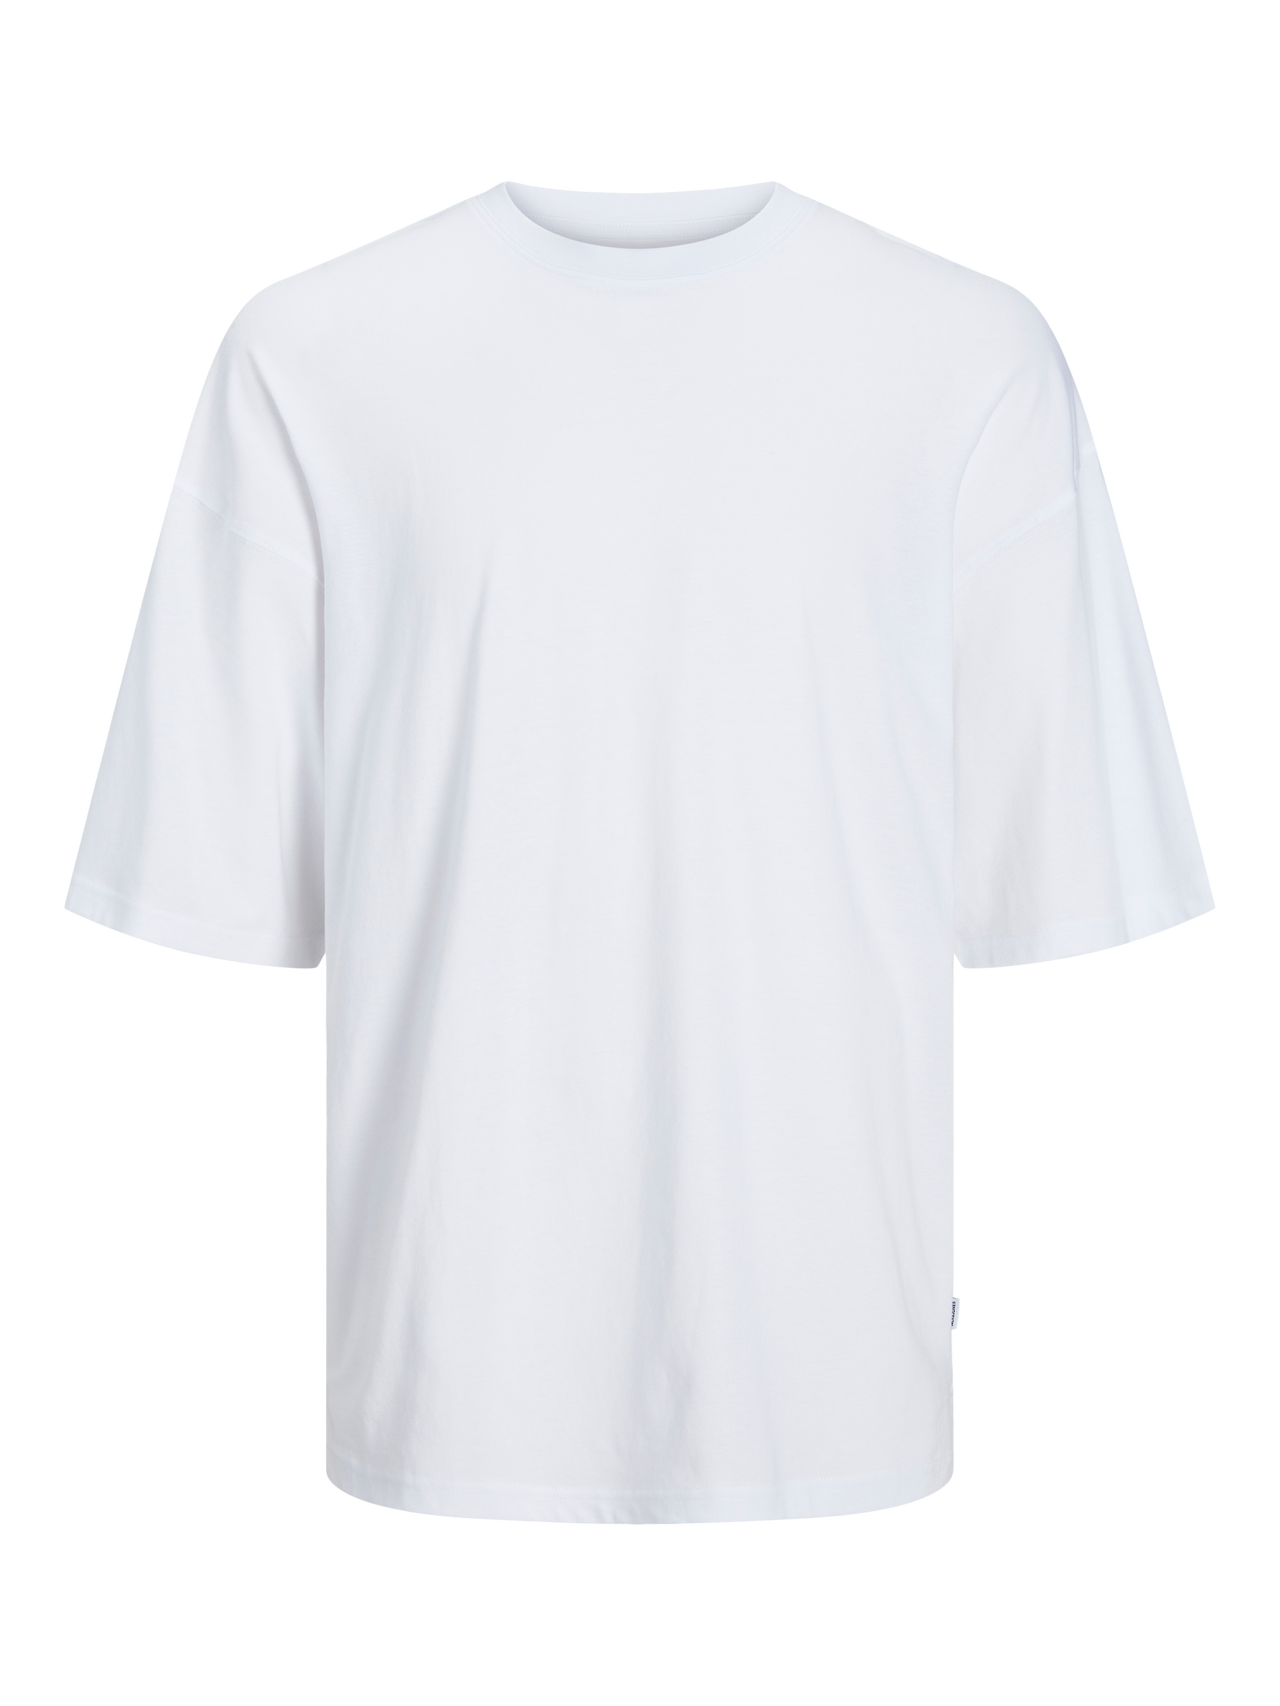 Jack & Jones Einfarbig Rundhals T-shirt -White - 12259975